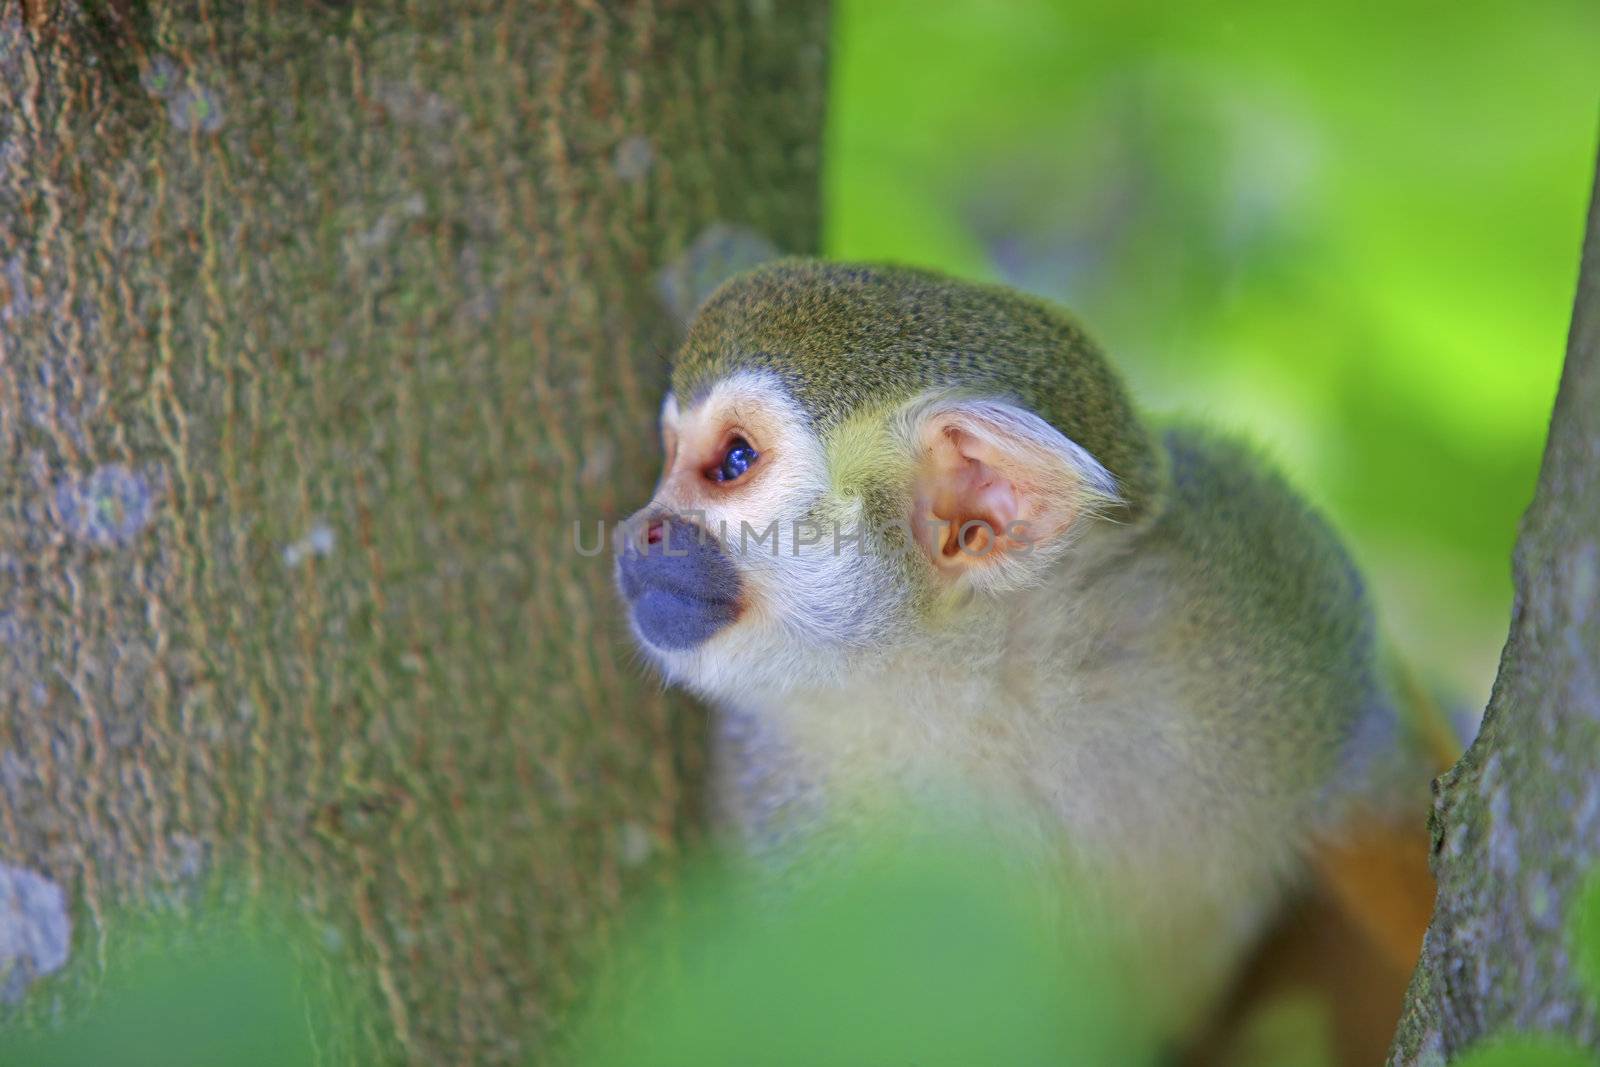 Common squirrel monkey by kjorgen